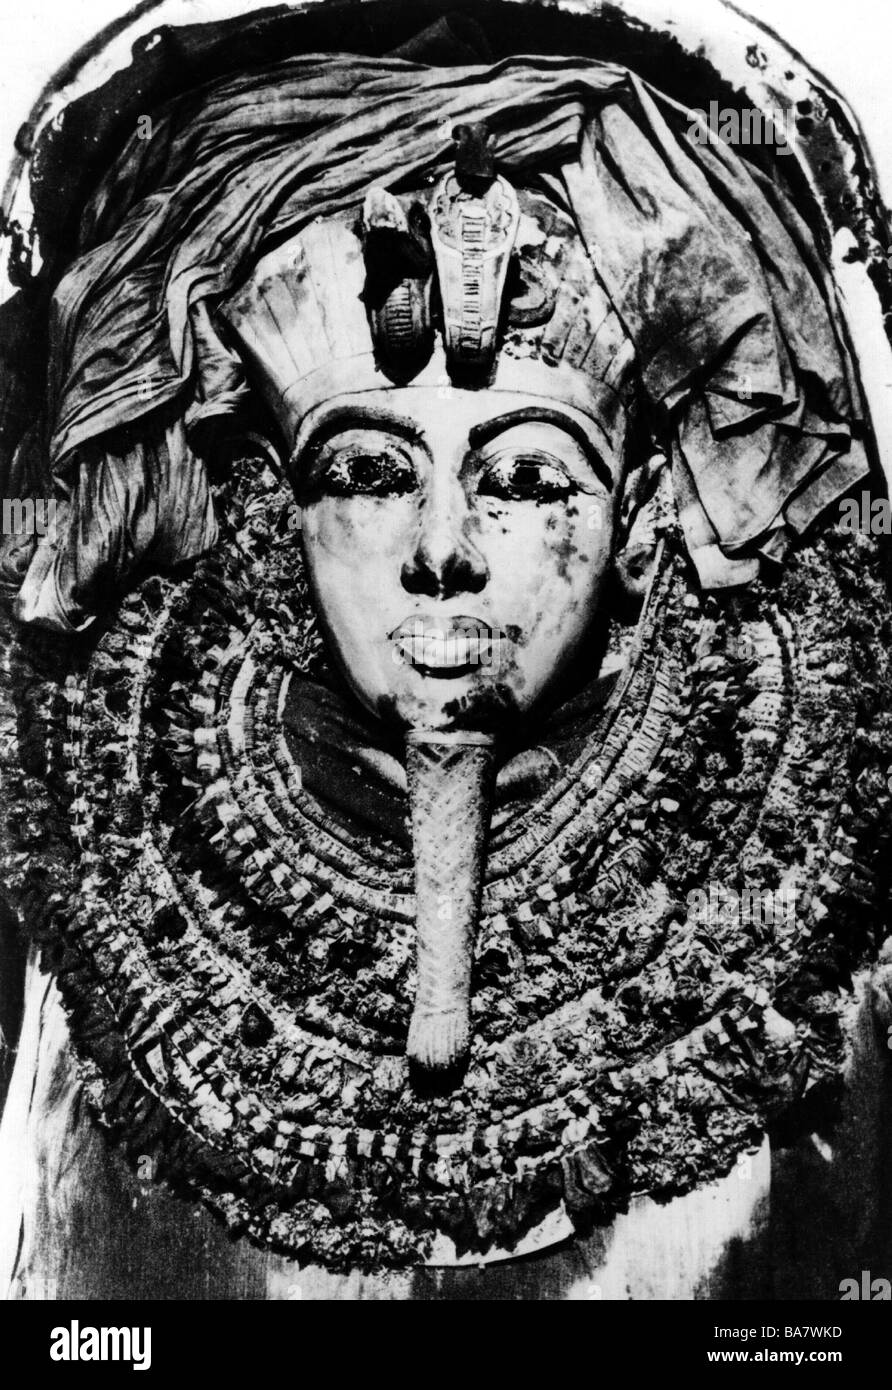 Toutankhamun, roi d'Egypte, 1333 - 1323 av. J.-C., 18ème dynastie, tombe dans la vallée des Rois, momie avec masque de mort dans le sarcophage (détail), Banque D'Images